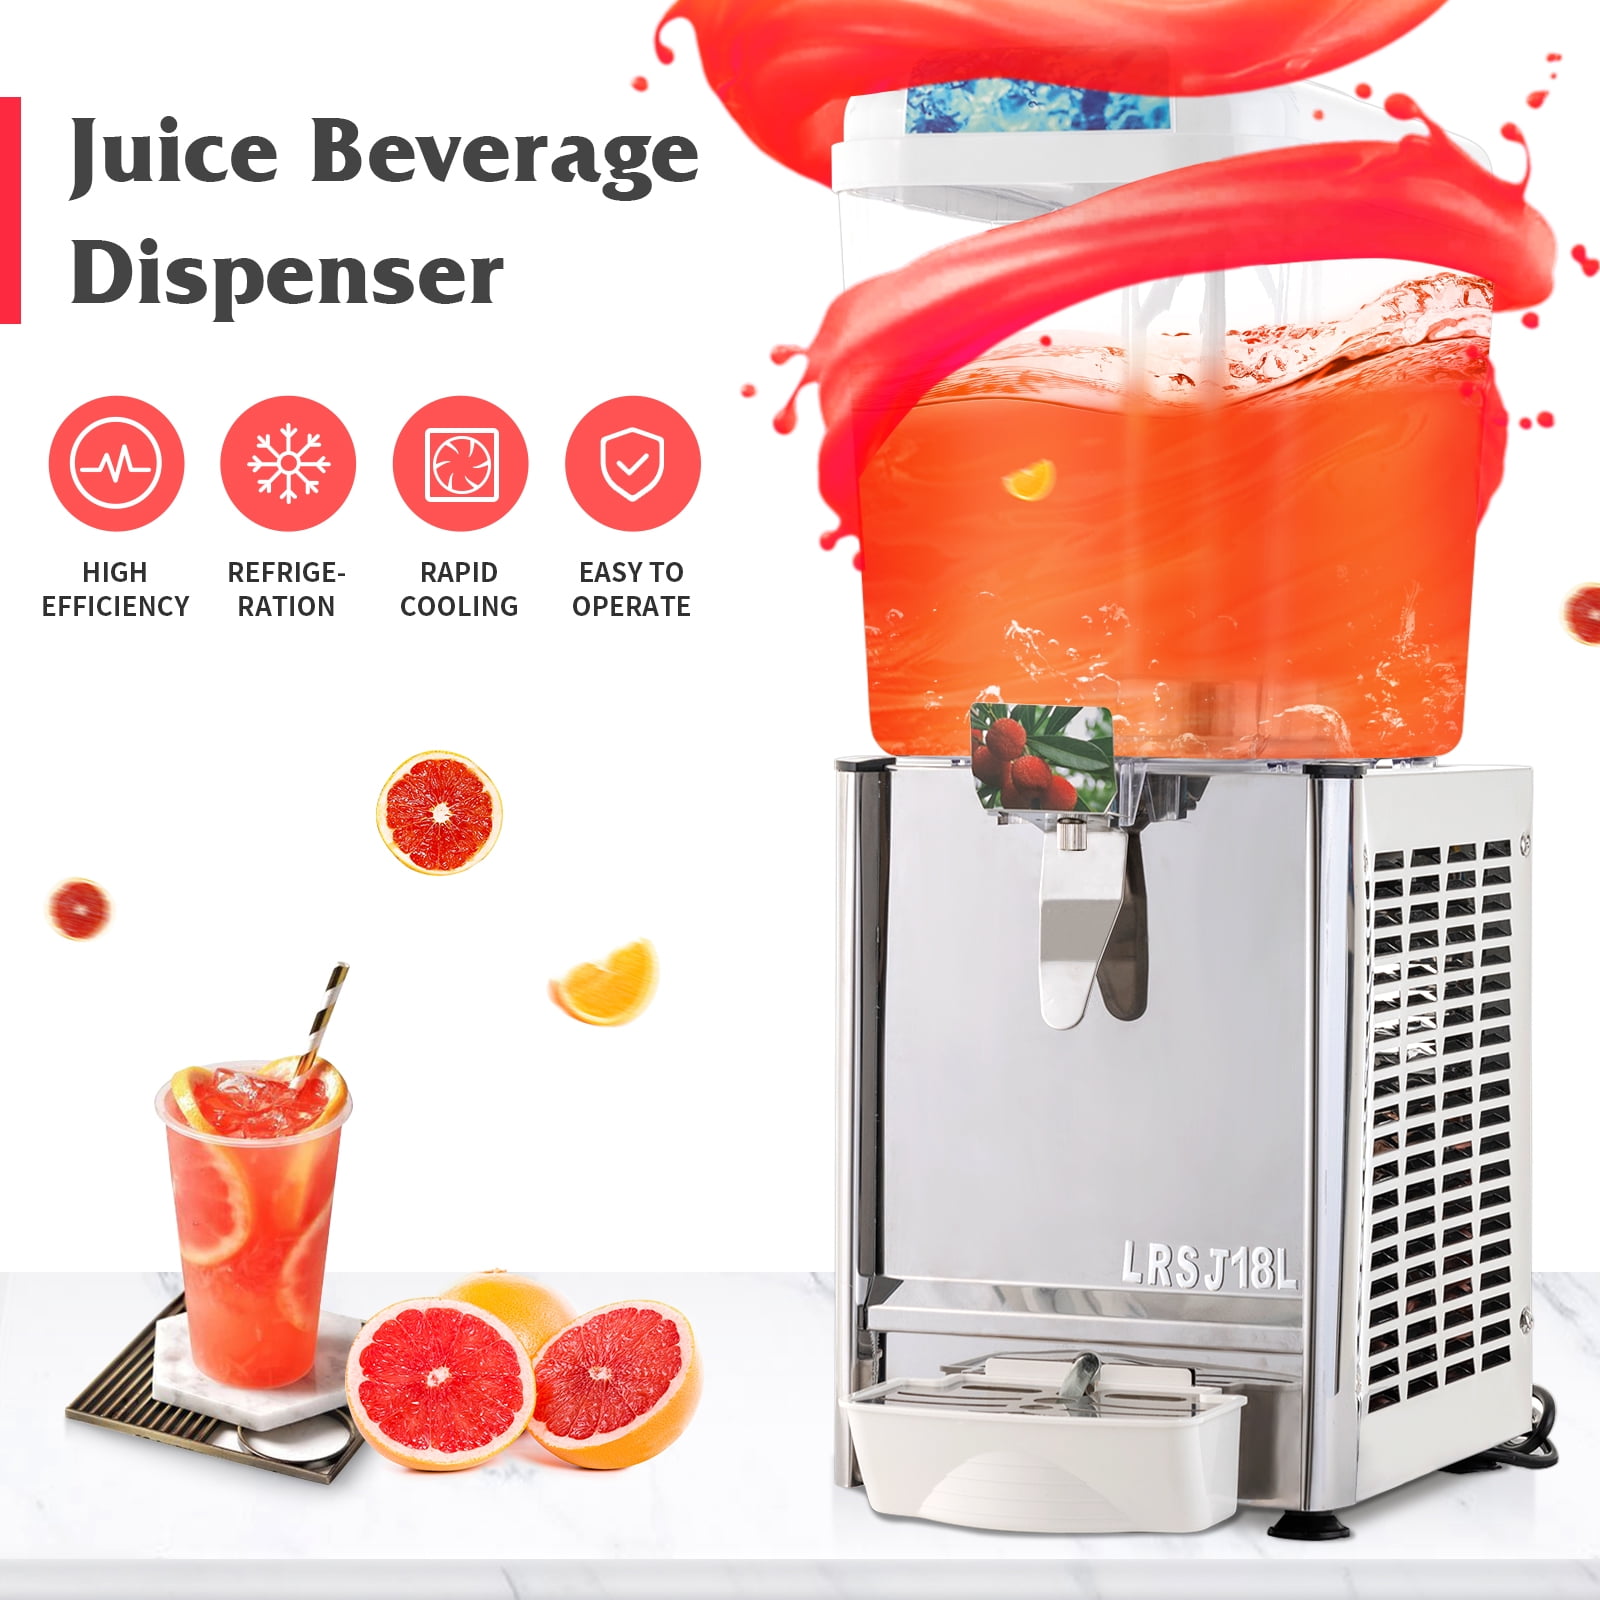 Kuppet Commercial Beverage/Juice/Drink Dispenser,14.25 Gallon 3